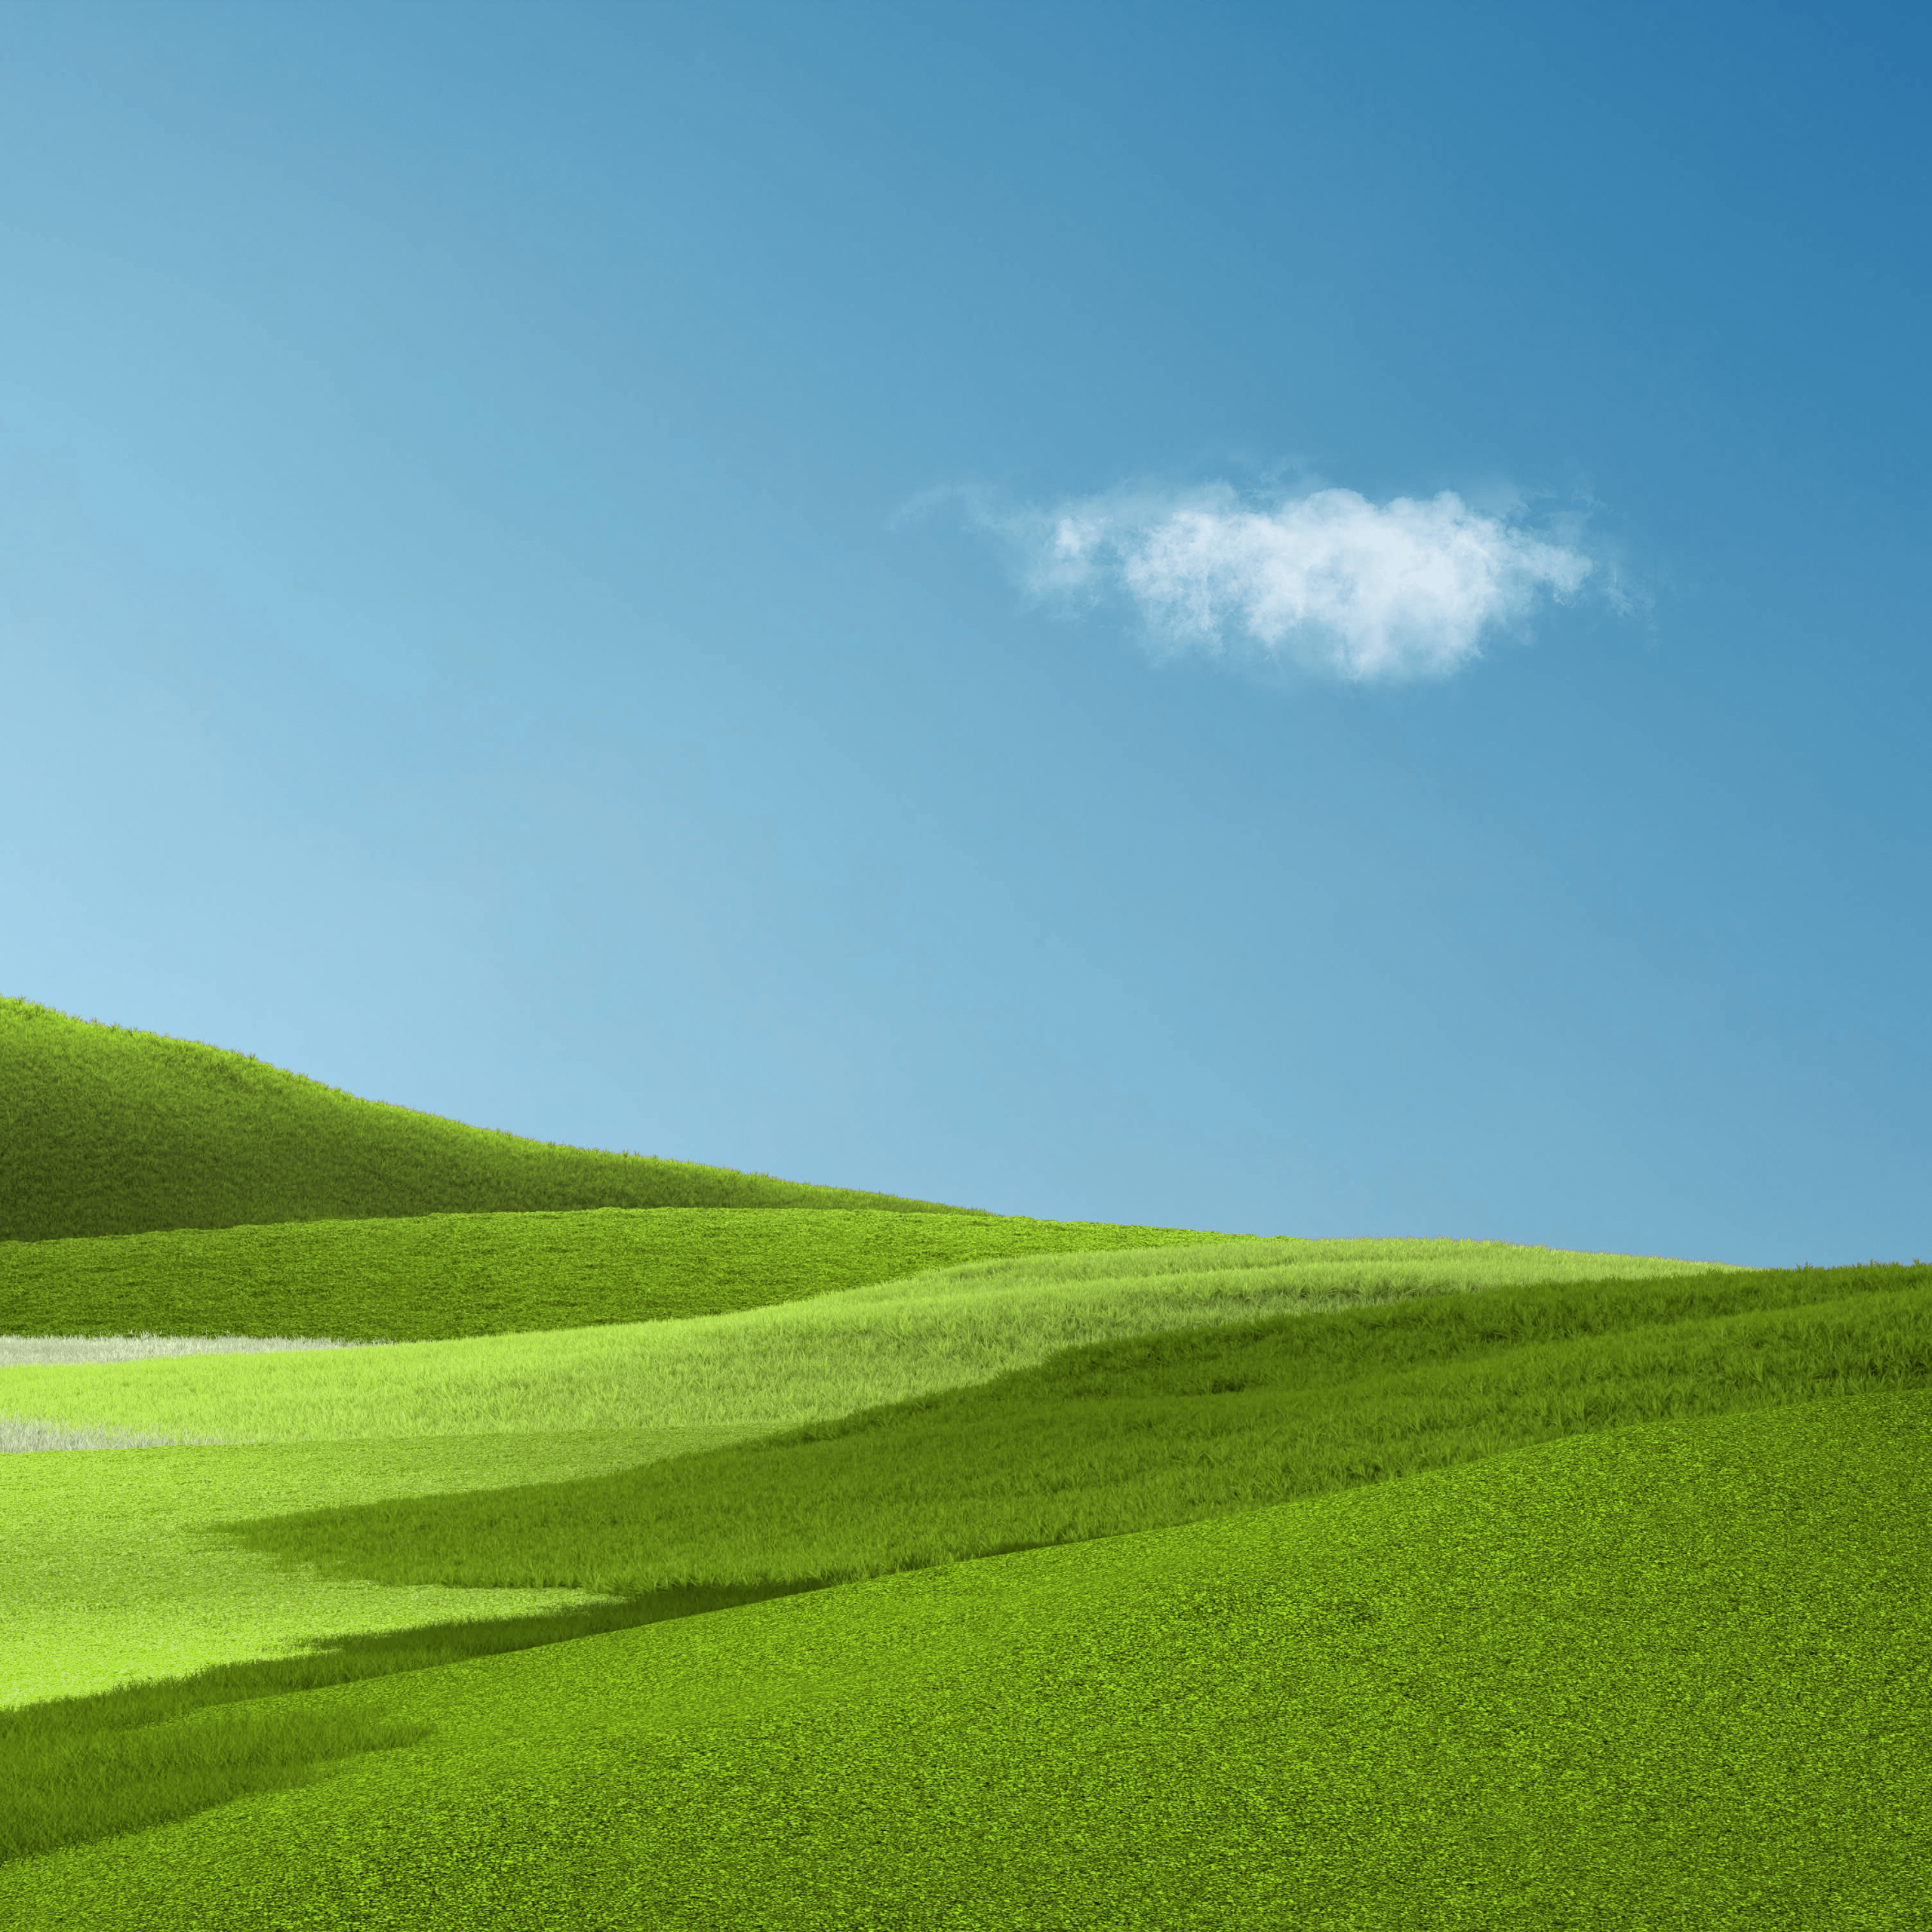 Aesthetic Wallpaper 4K, Landscape, Grass field, Green Grass, Clear sky, Nature